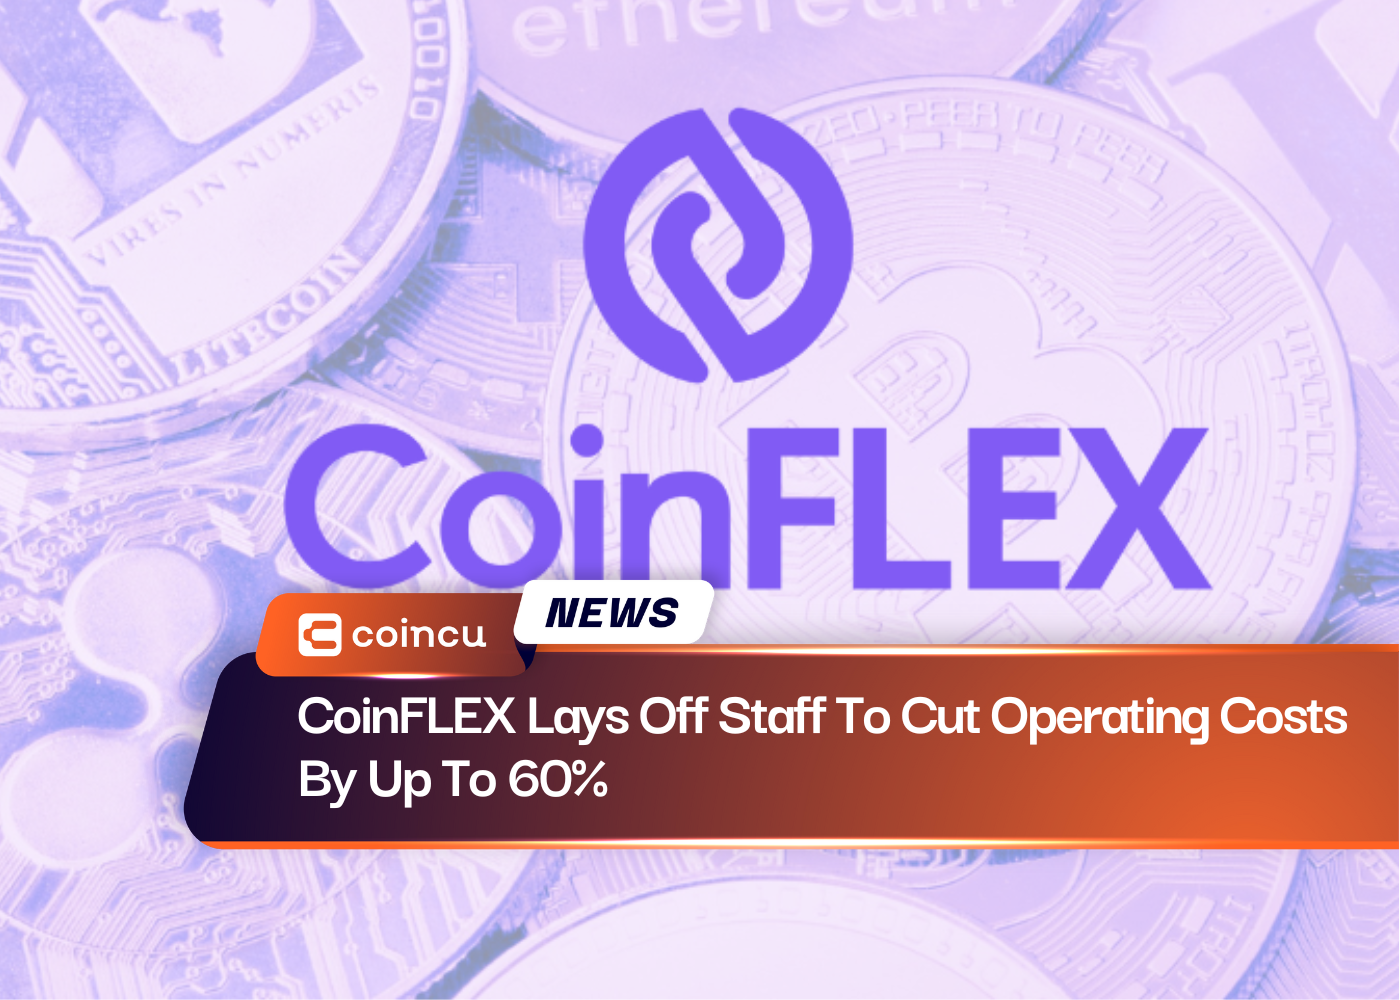 CoinFLEX увольняет персонал, чтобы сократить операционные расходы до 60%